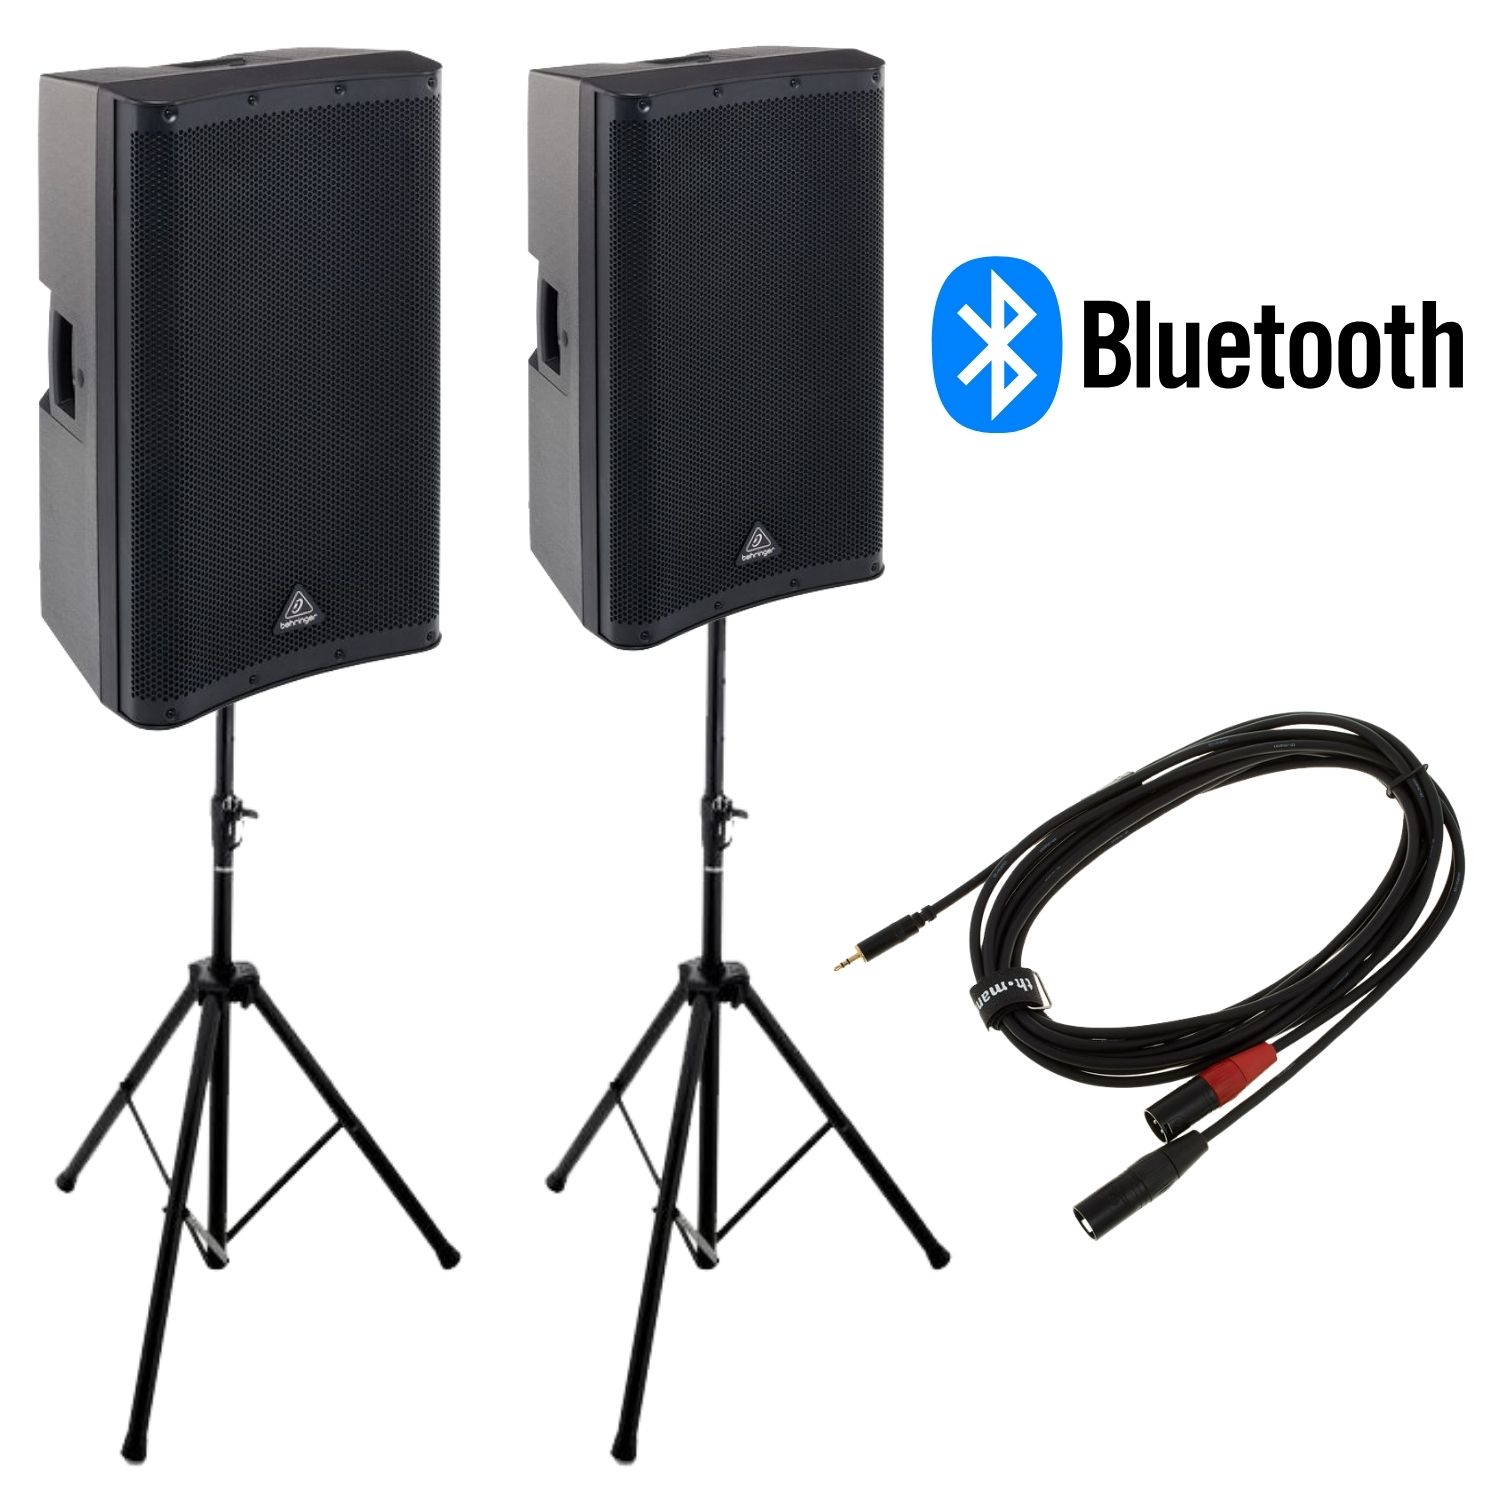 Pack altavoces Behringer Bluetooth 1400w stereo con soporte trípode y cableado